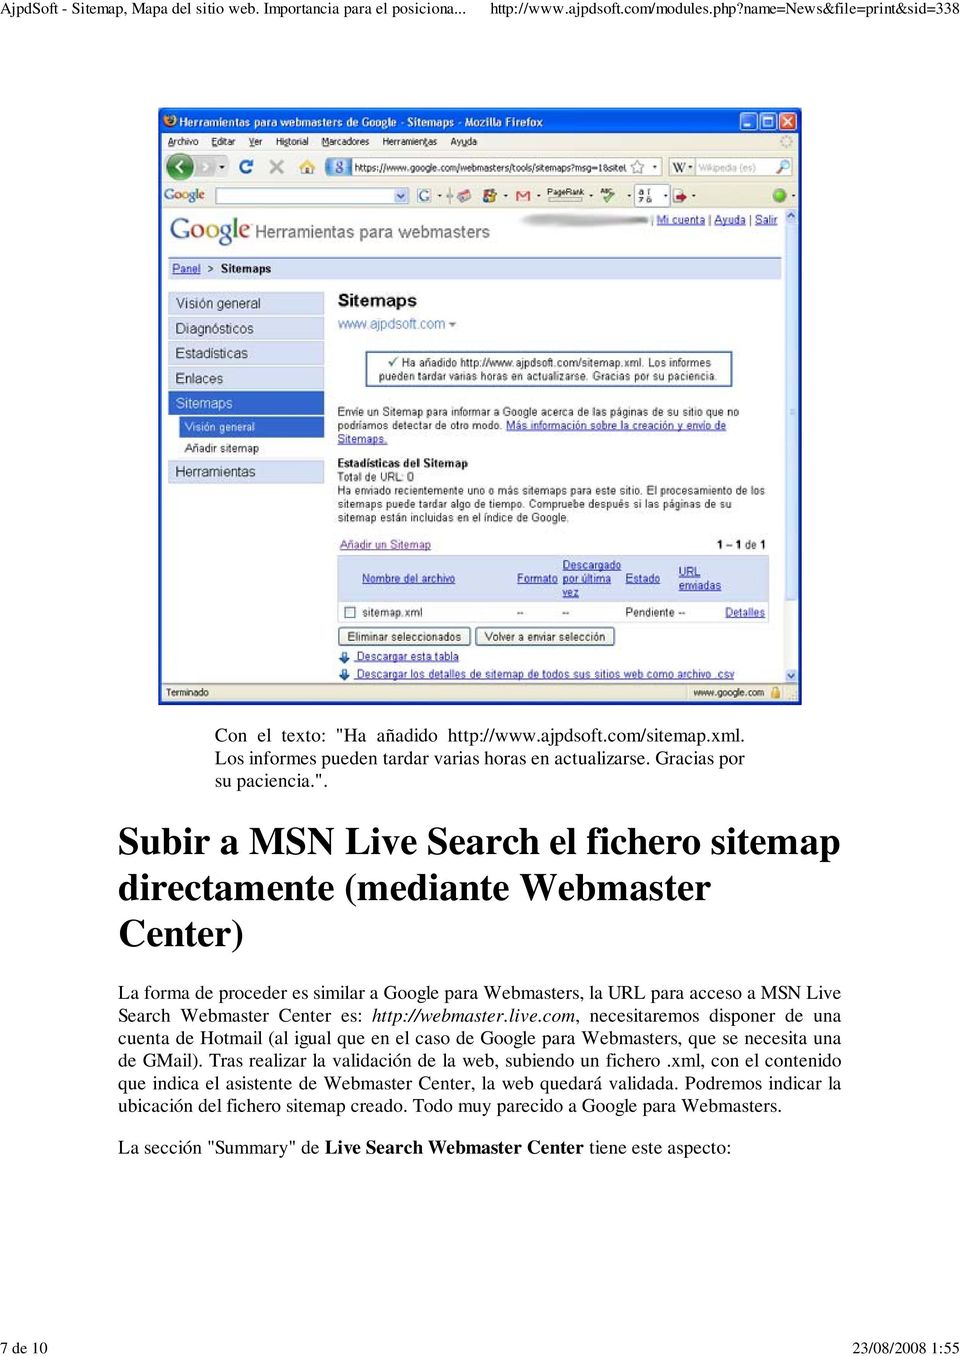 Subir a MSN Live Search el fichero sitemap directamente (mediante Webmaster Center) La forma de proceder es similar a Google para Webmasters, la URL para acceso a MSN Live Search Webmaster Center es: